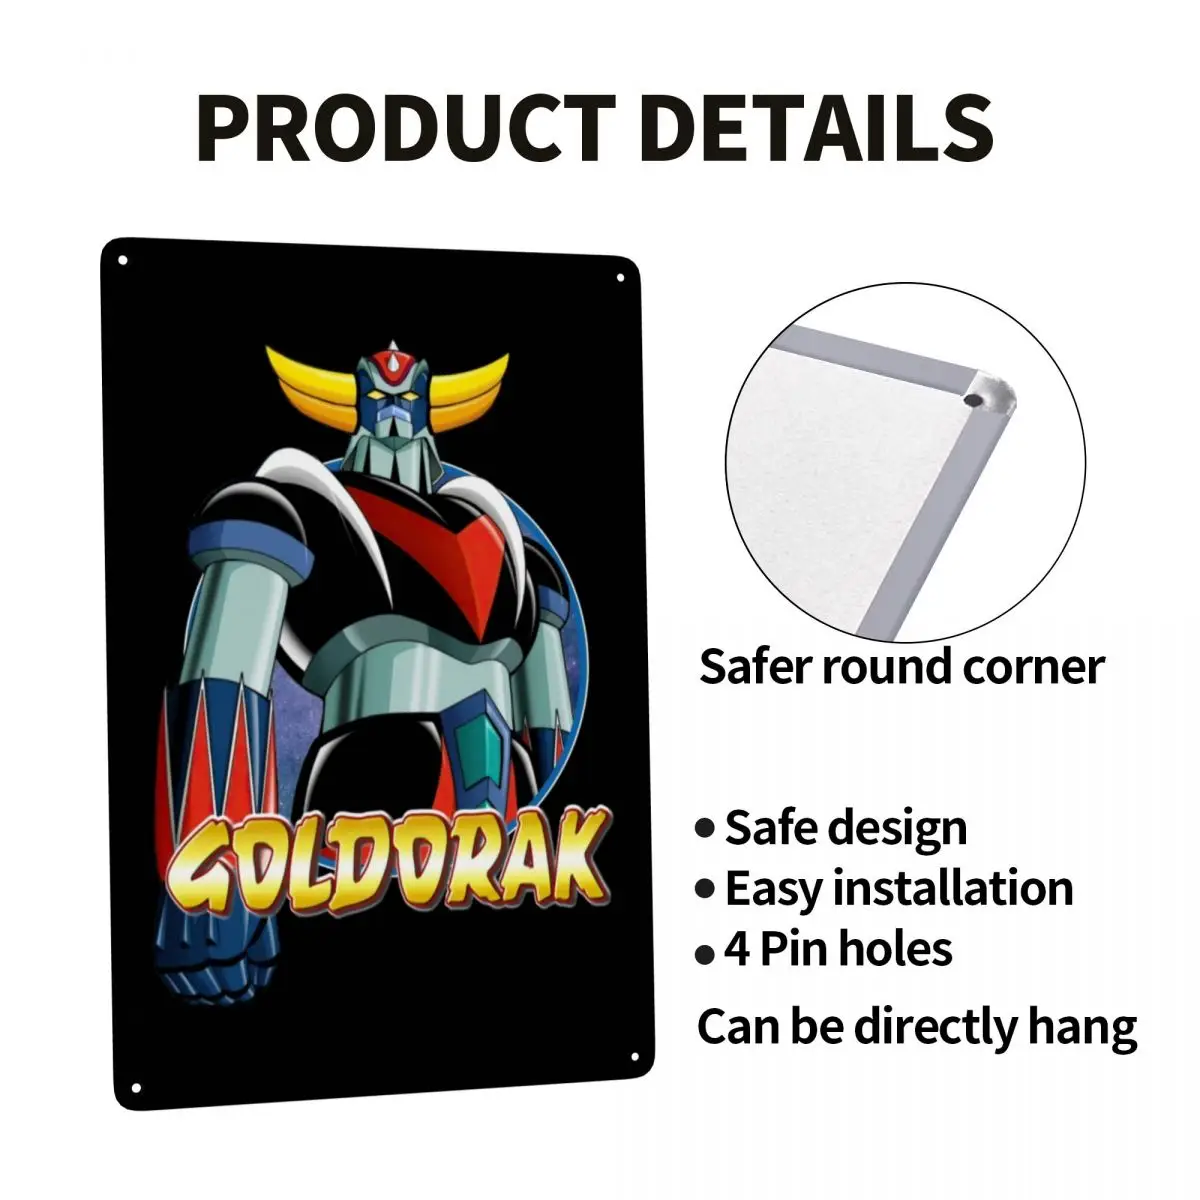  Goldorak Box 3 (coffret 5 Dvd) - DVD